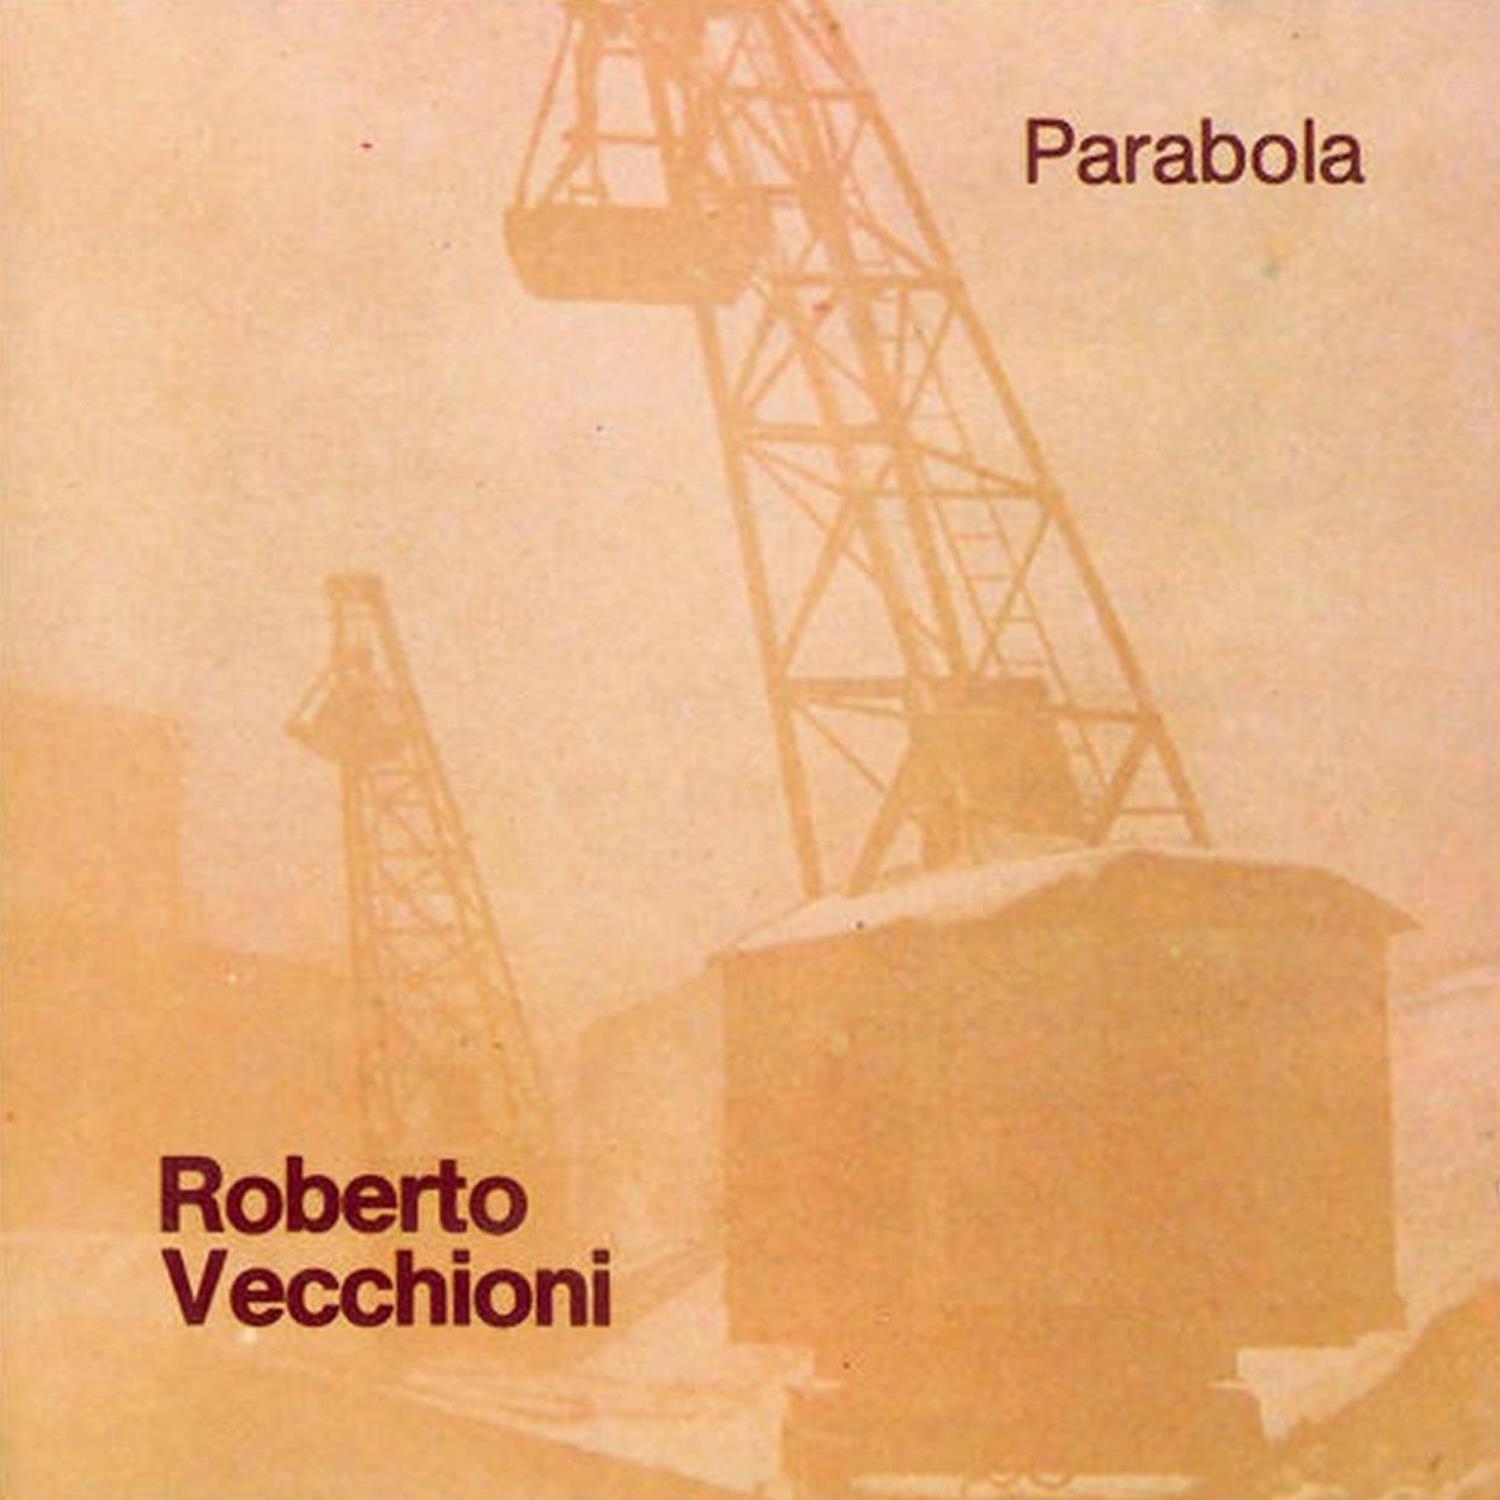 Vinile Roberto Vecchioni - Parabola Vinyl NUOVO SIGILLATO EDIZIONE DEL SUBITO DISPONIBILE bianco